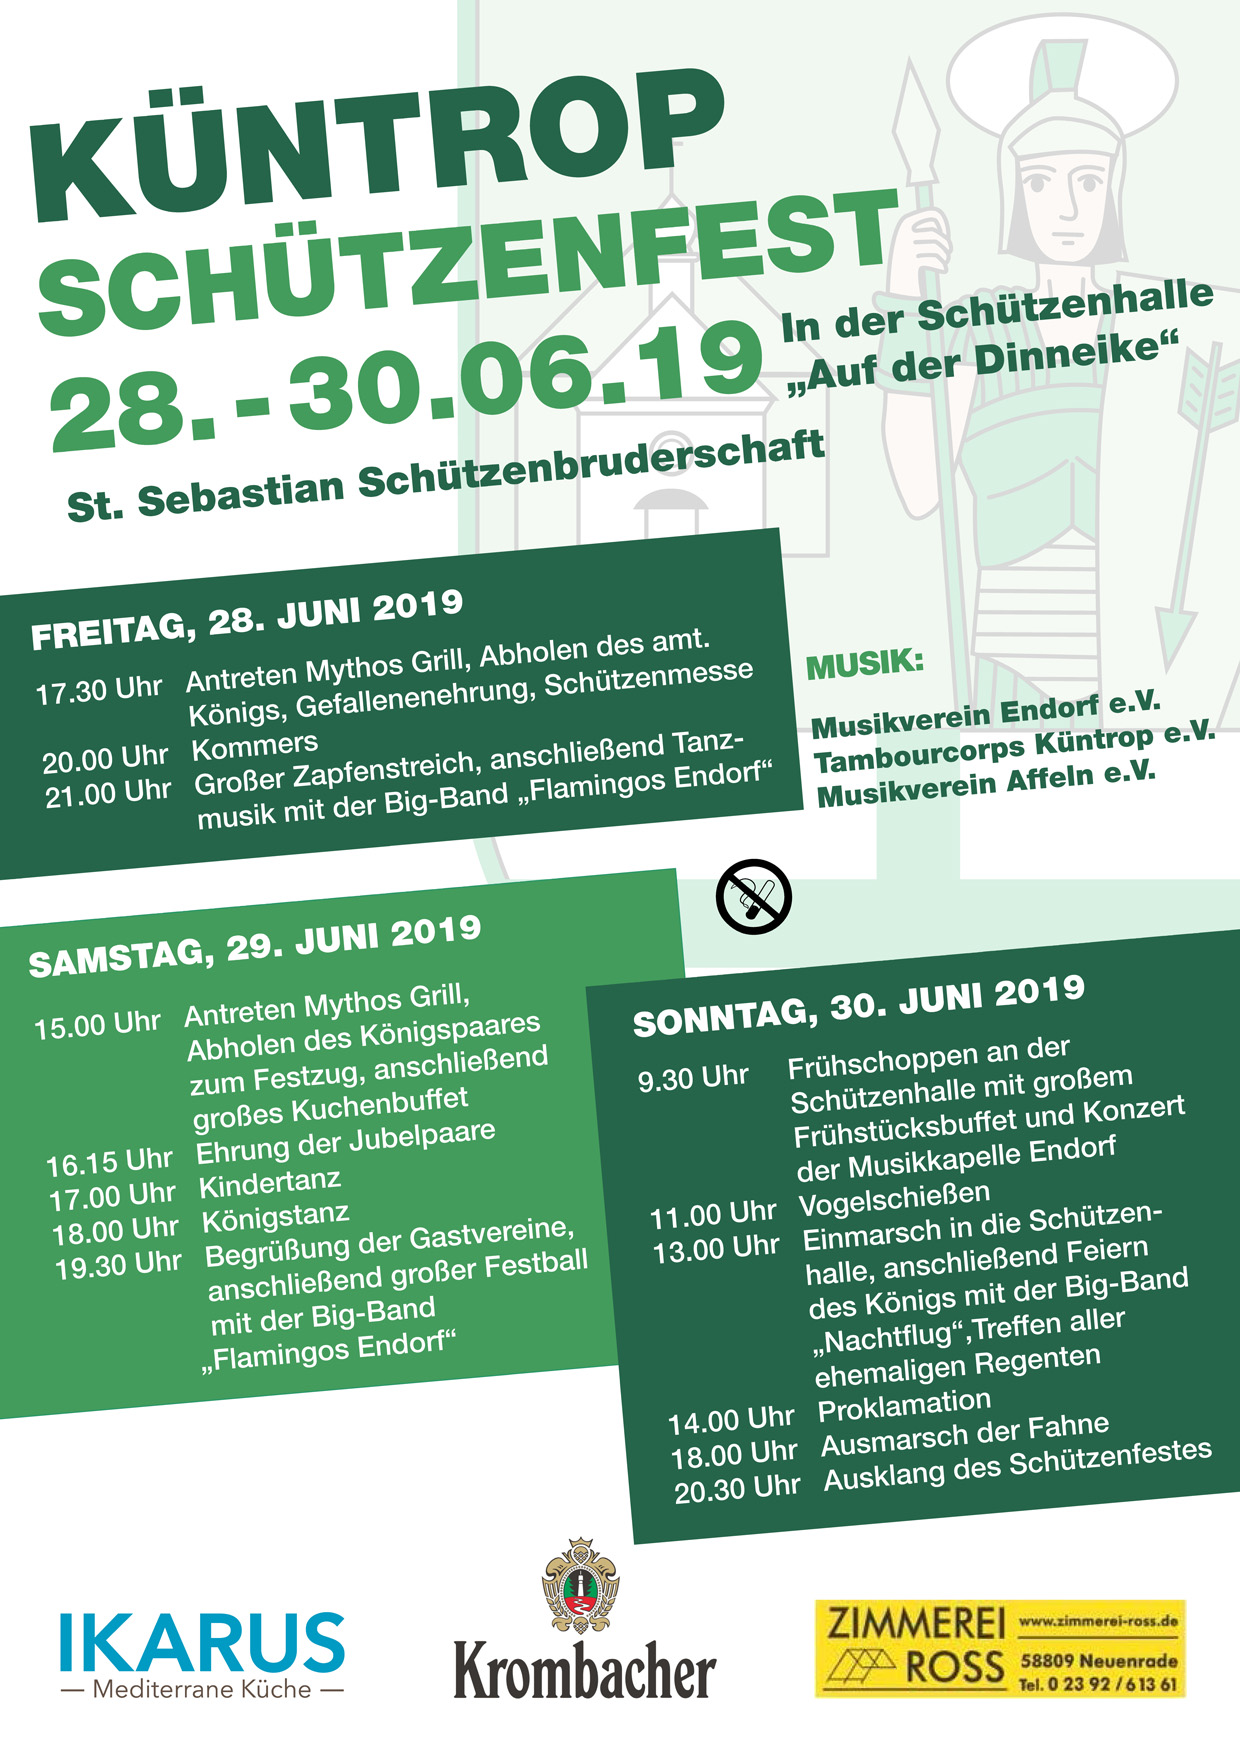 Schützenfest 2019 in Küntrop